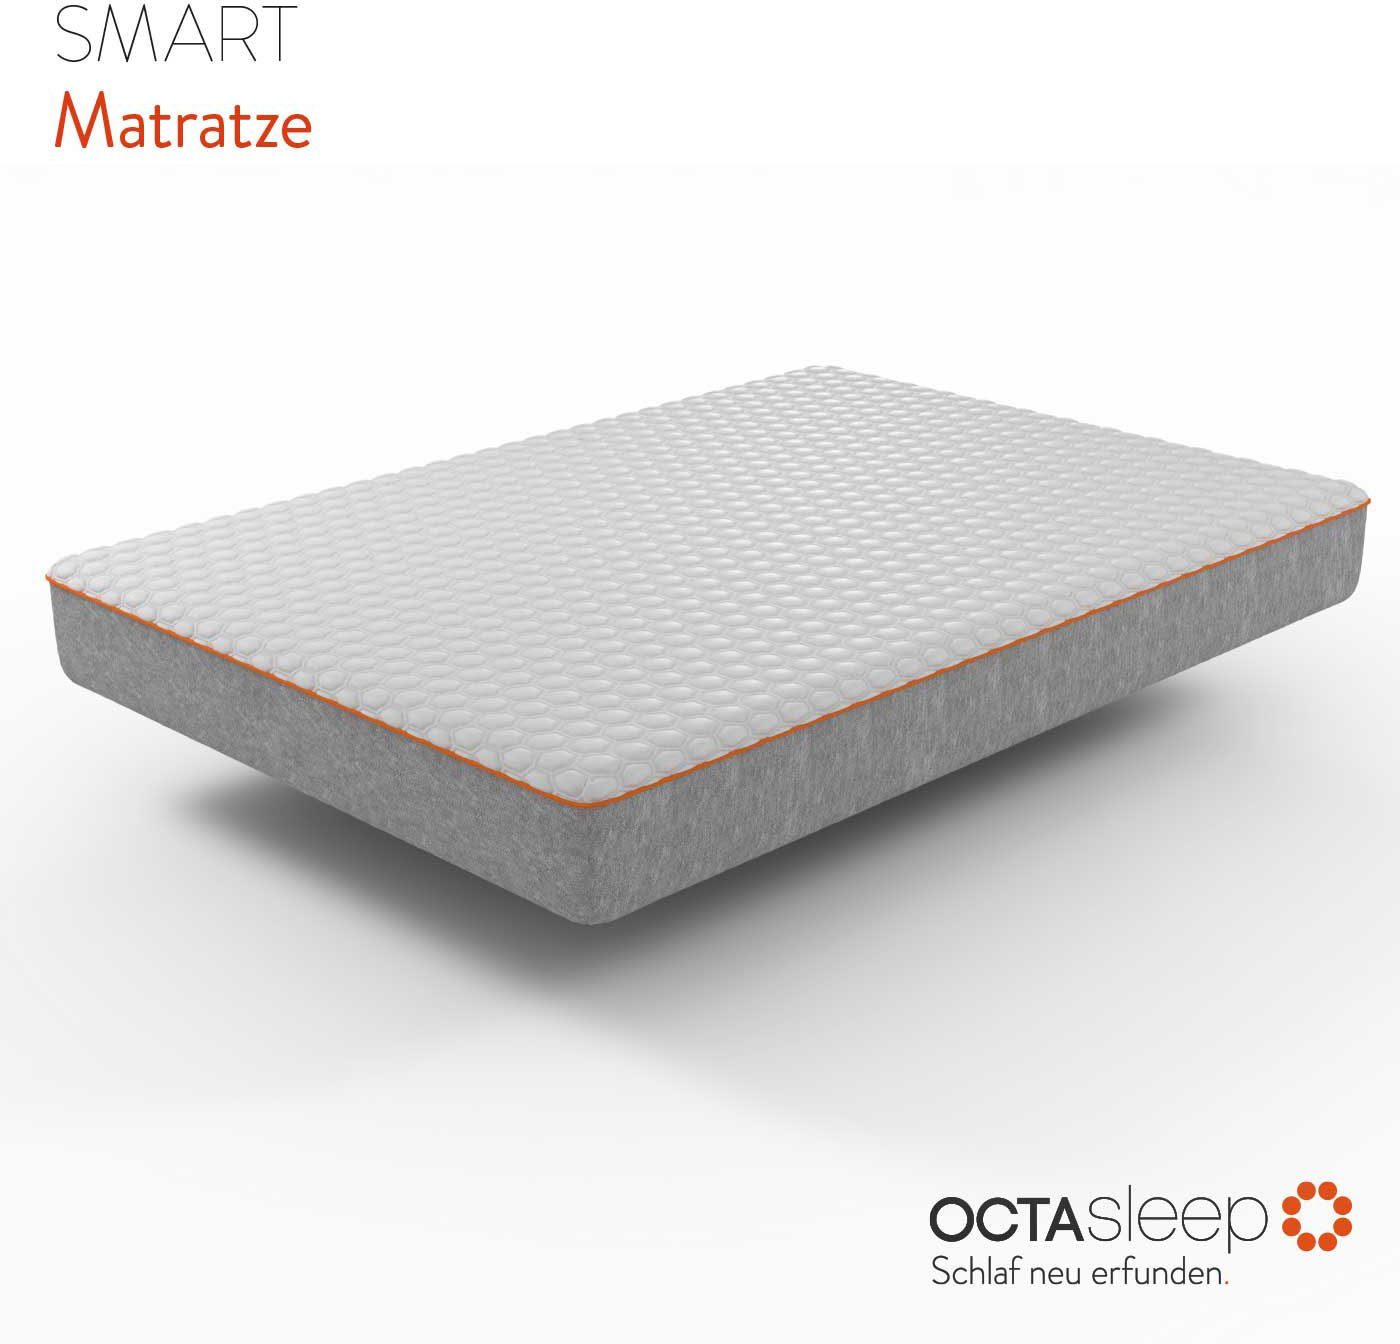 OCTAsleep Comfortschuimmatras Octasleep Smart Matress Innovatieve schuimveren met innovatieve comfortbeleving hoogte 18 cm